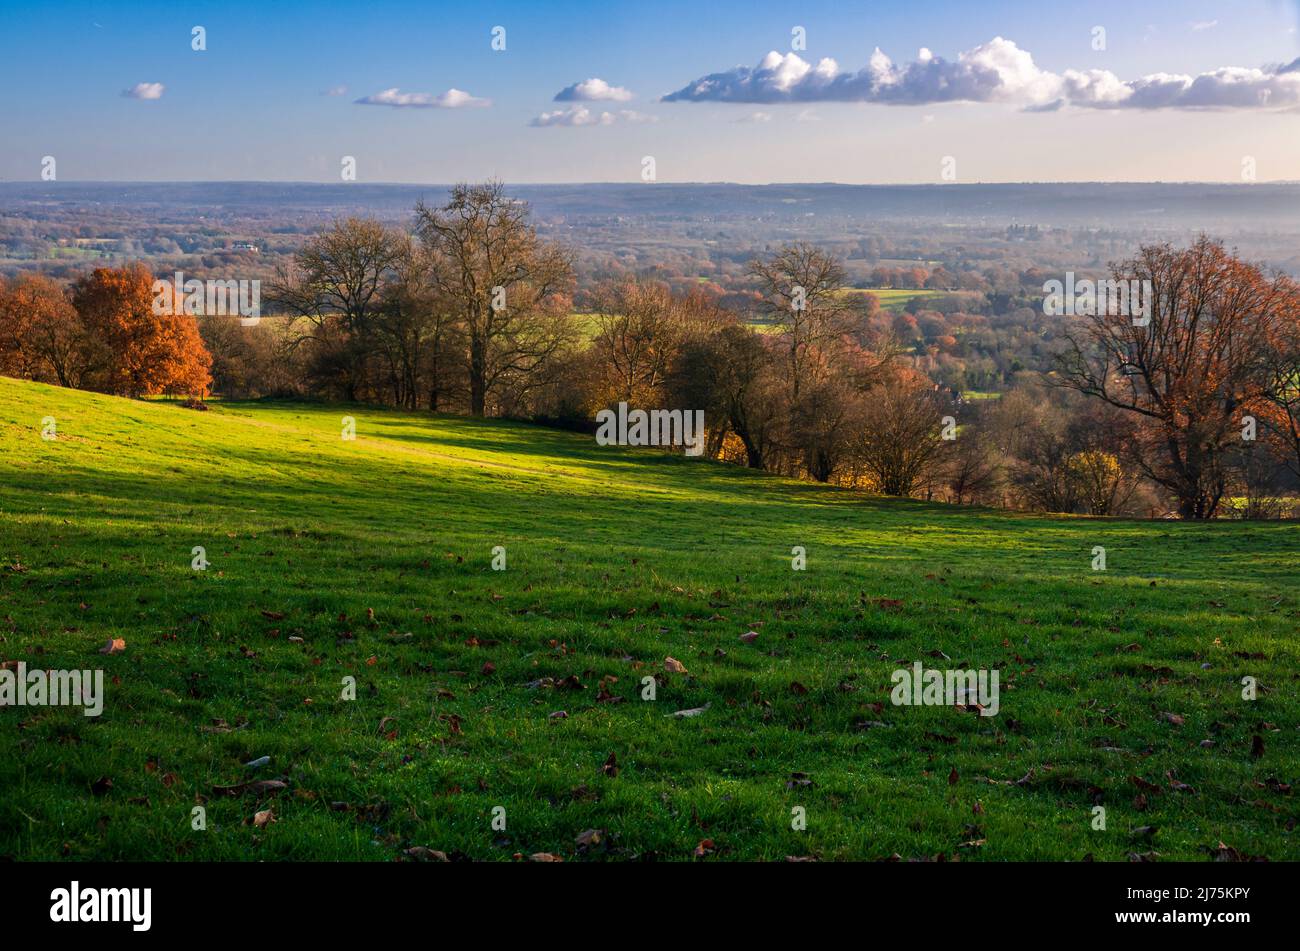 Wunderschöne Aussicht im Spätherbst südlich des weald von den Kent Downs in der Nähe von Sevenoaks im Südosten Englands Stockfoto